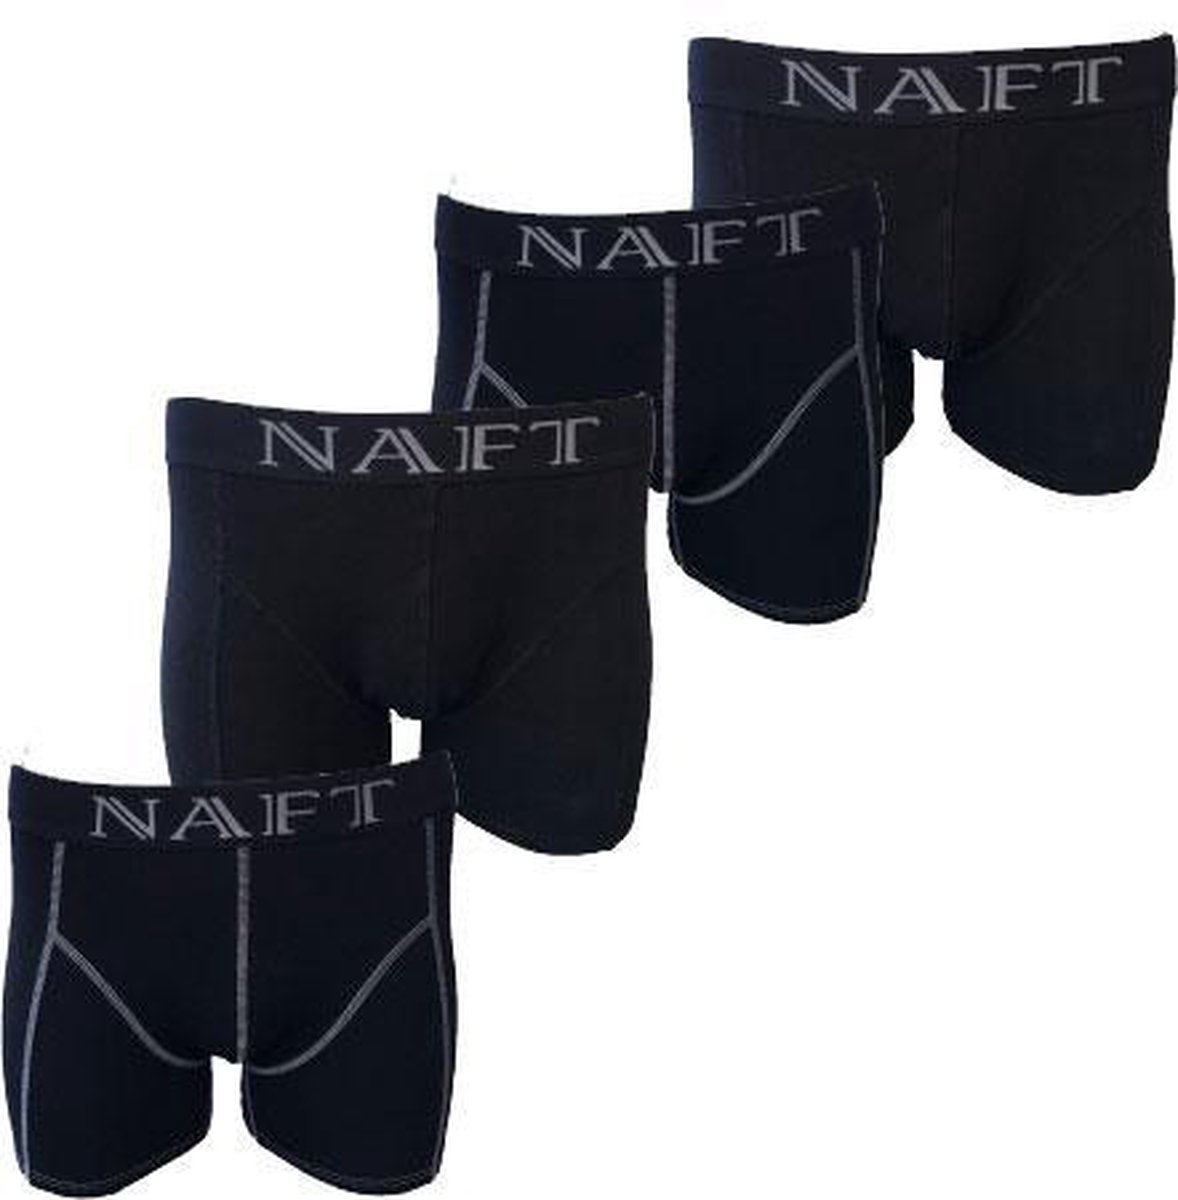 4 stuks katoenen NAFT zwarte boxershorts maat L | bol.com